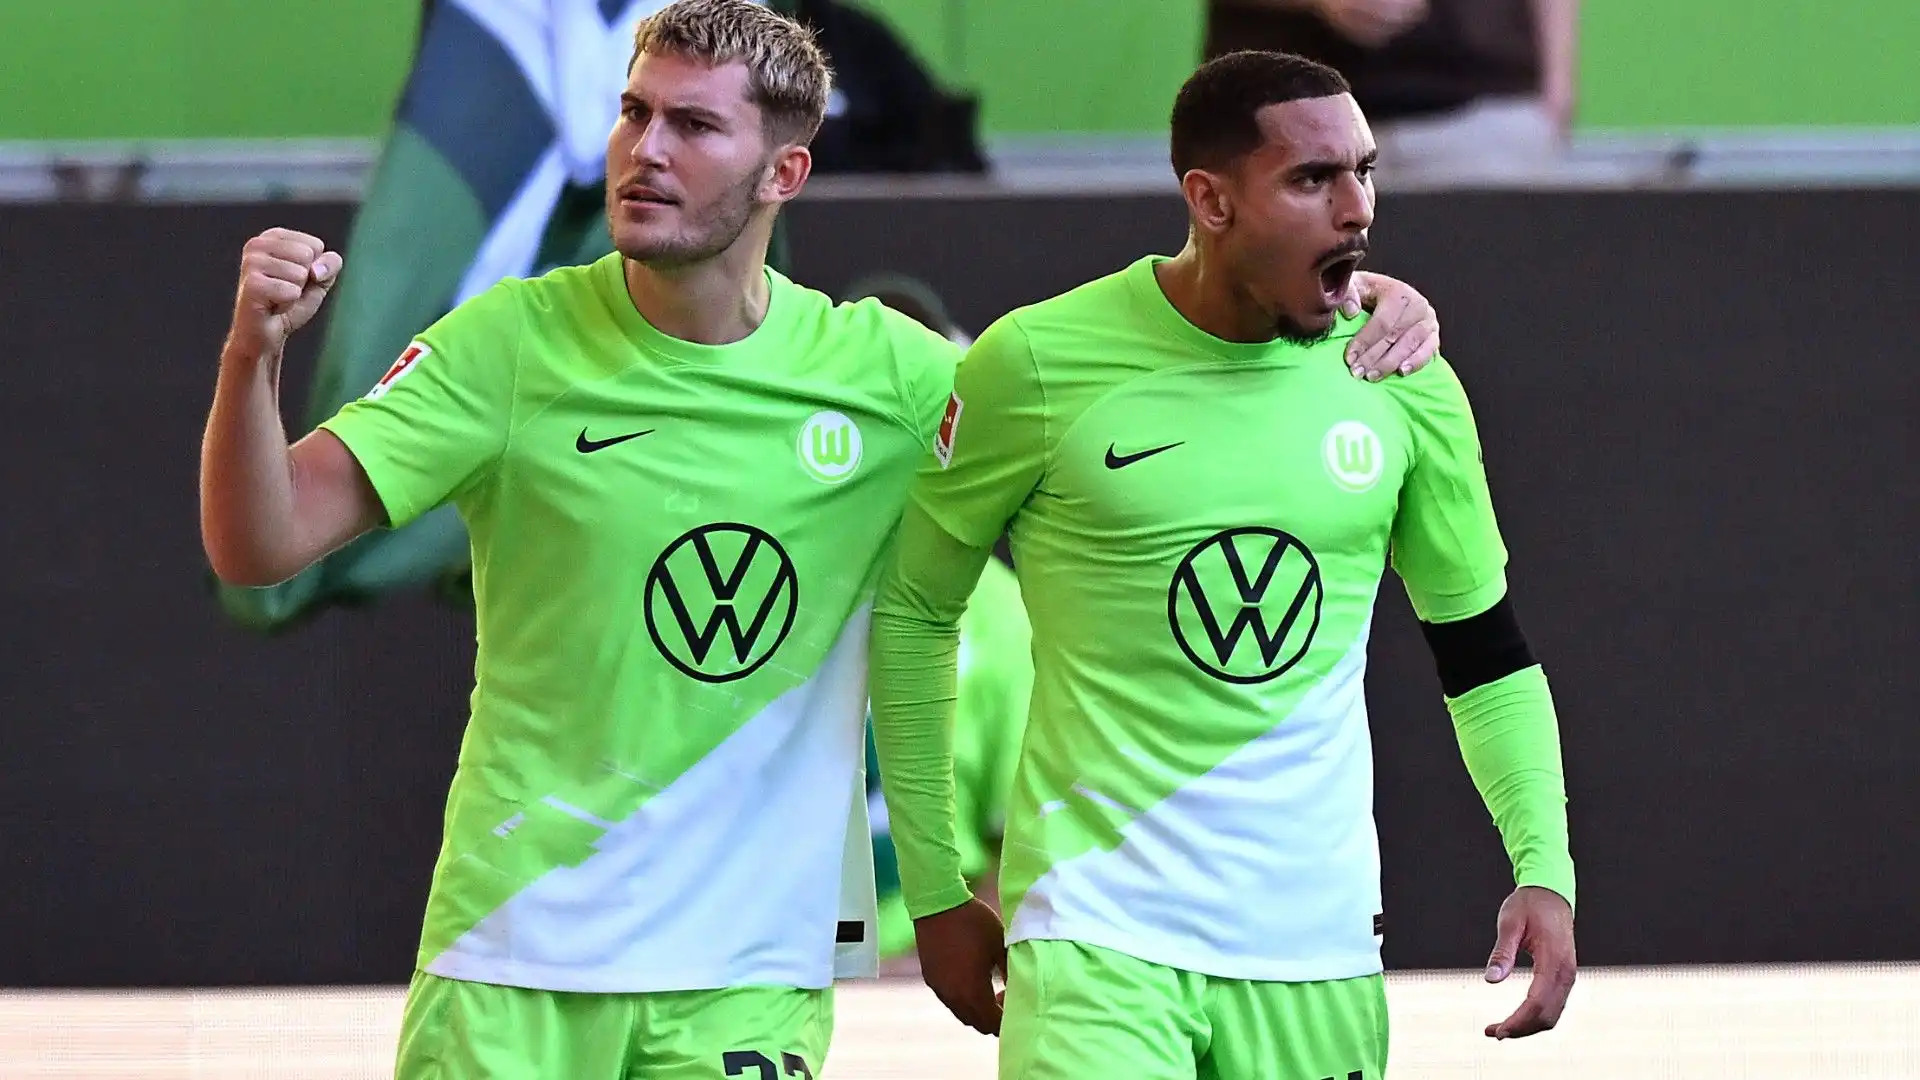 Finora con il Wolfsburg ha collezionato 115 presenze, 4 gol e 1 assist